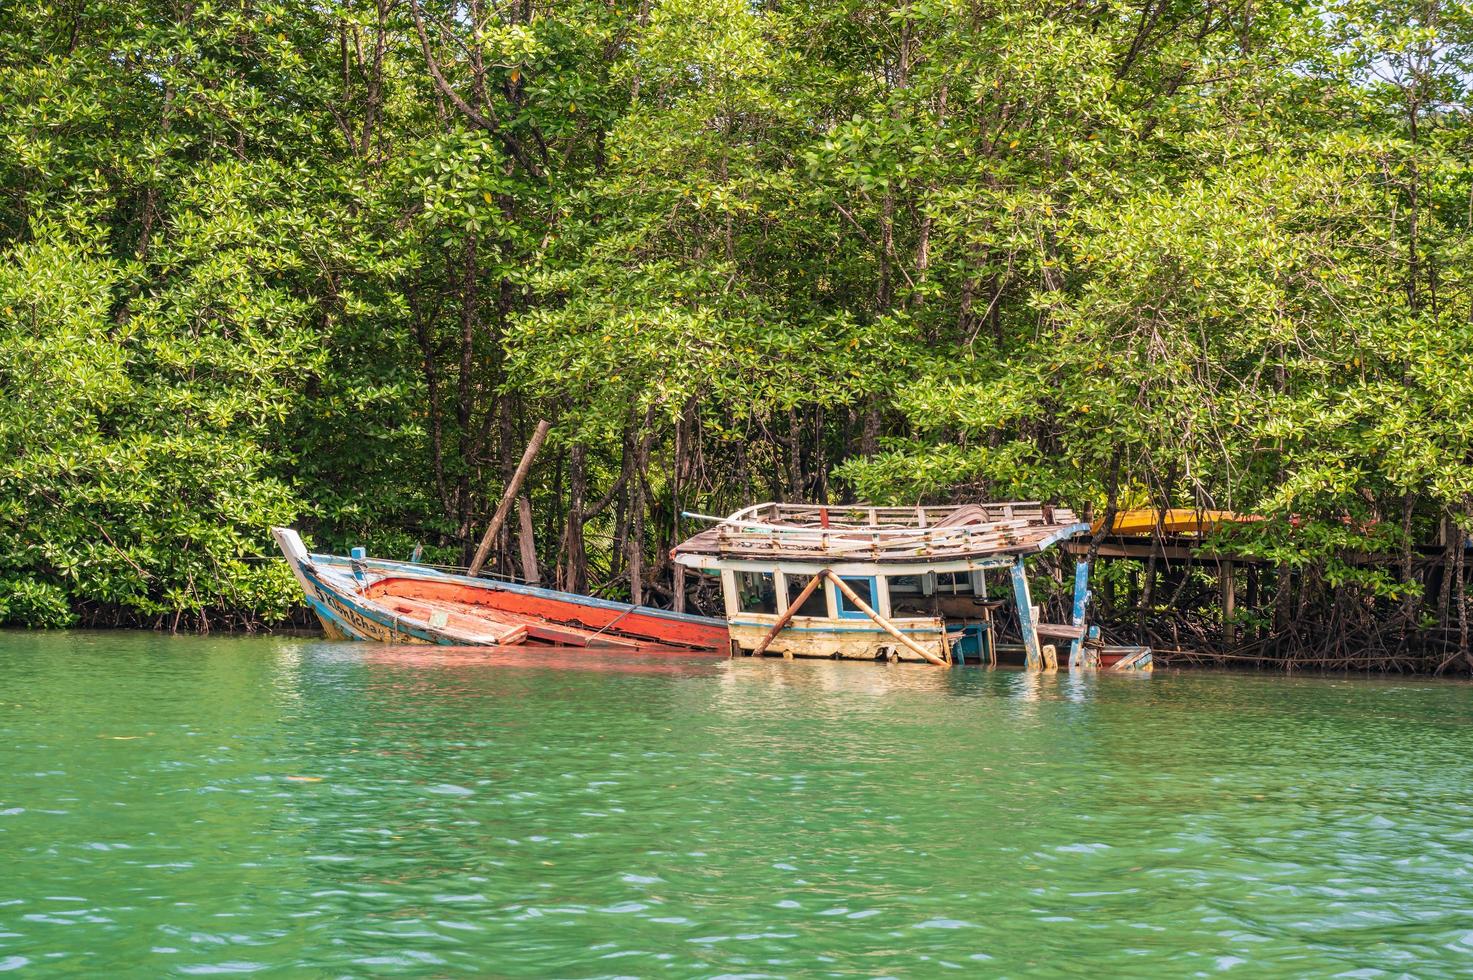 Fischerei Schiffswrack am Fluss Klong Chao auf der Insel Koh Kood bei Trat thailand.Koh Kood, auch bekannt als Ko Kut, ist eine Insel im Golf von Thailand foto